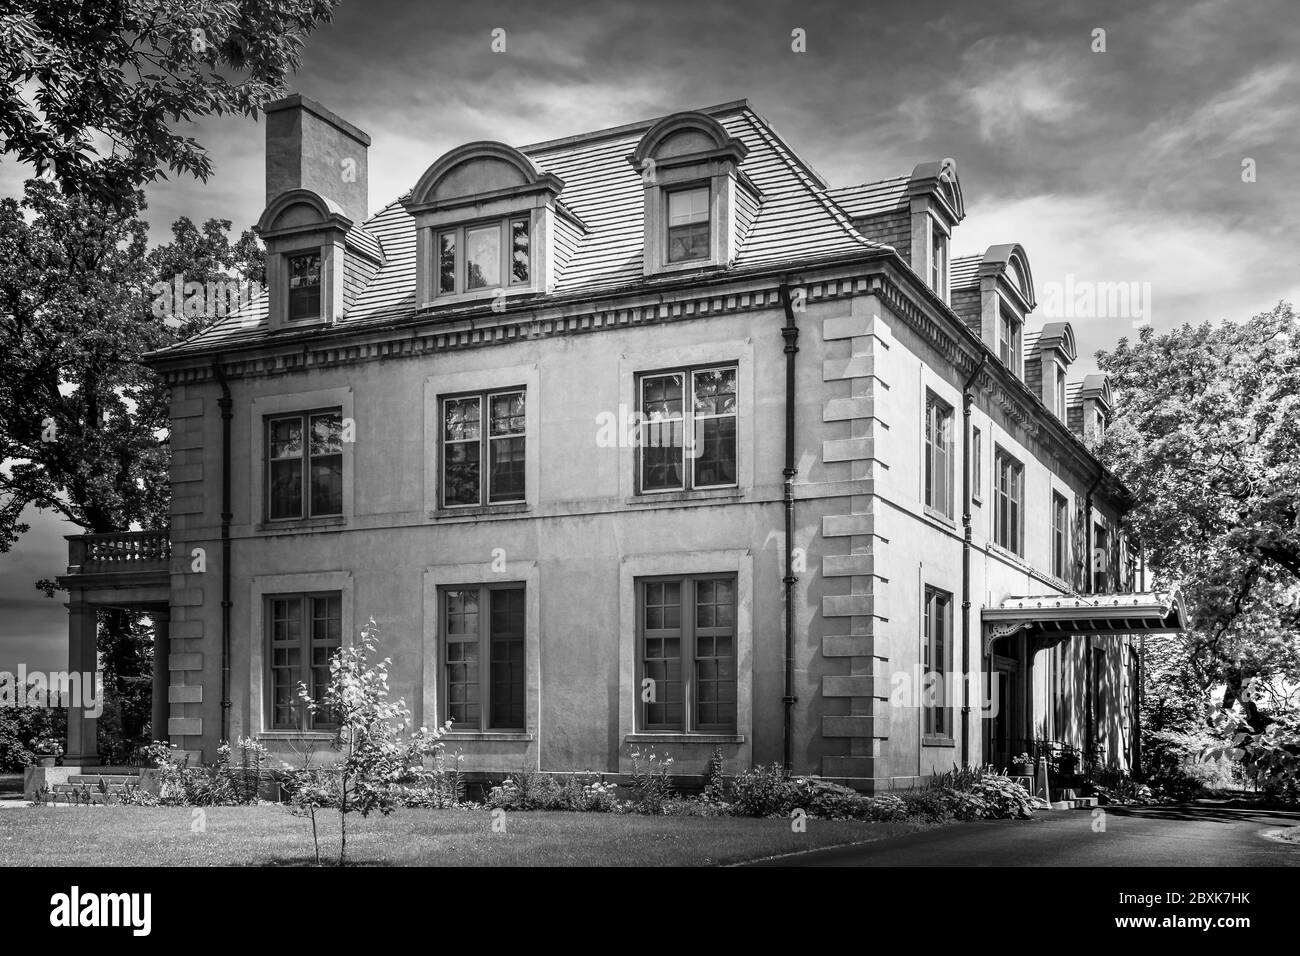 Una suggestiva villa francese in stile Beaux Arts, con un tetto mansarda con finestre ad arco in piccolo paese America, St. Cloud, MN, USA, in B&W. Foto Stock